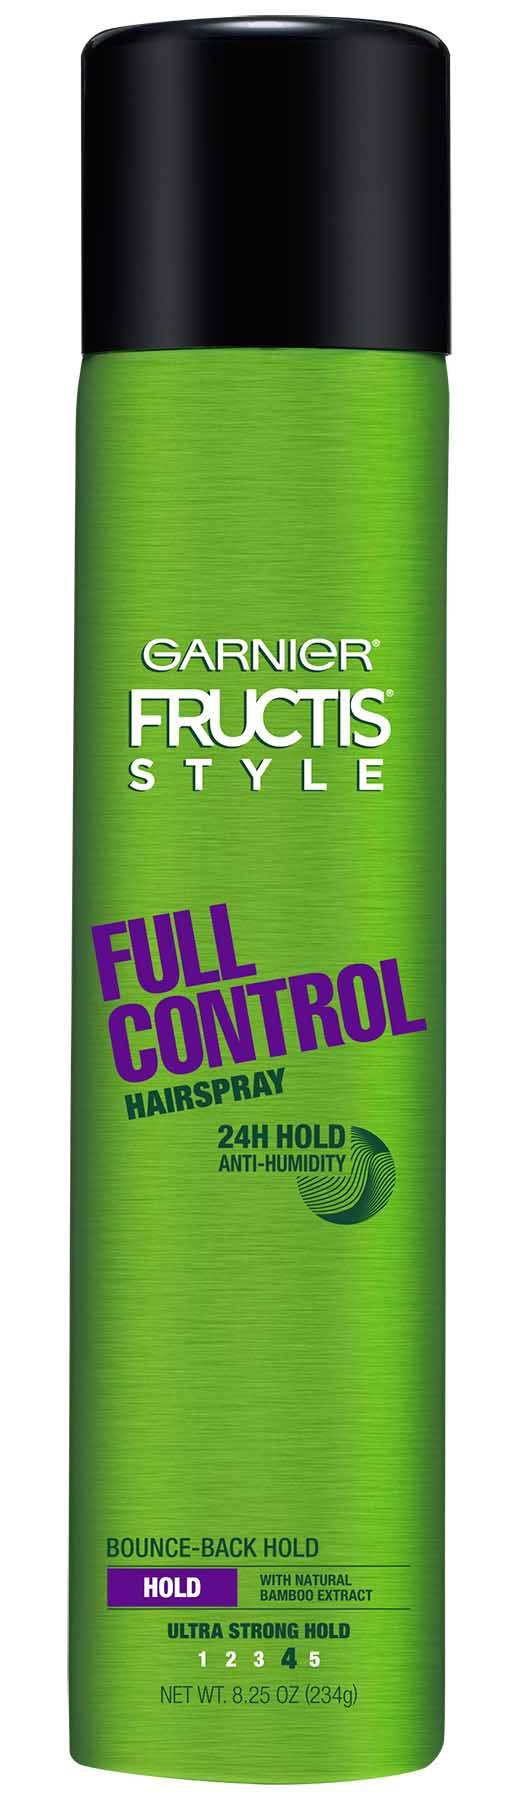 Garnier Full Control Hairspray